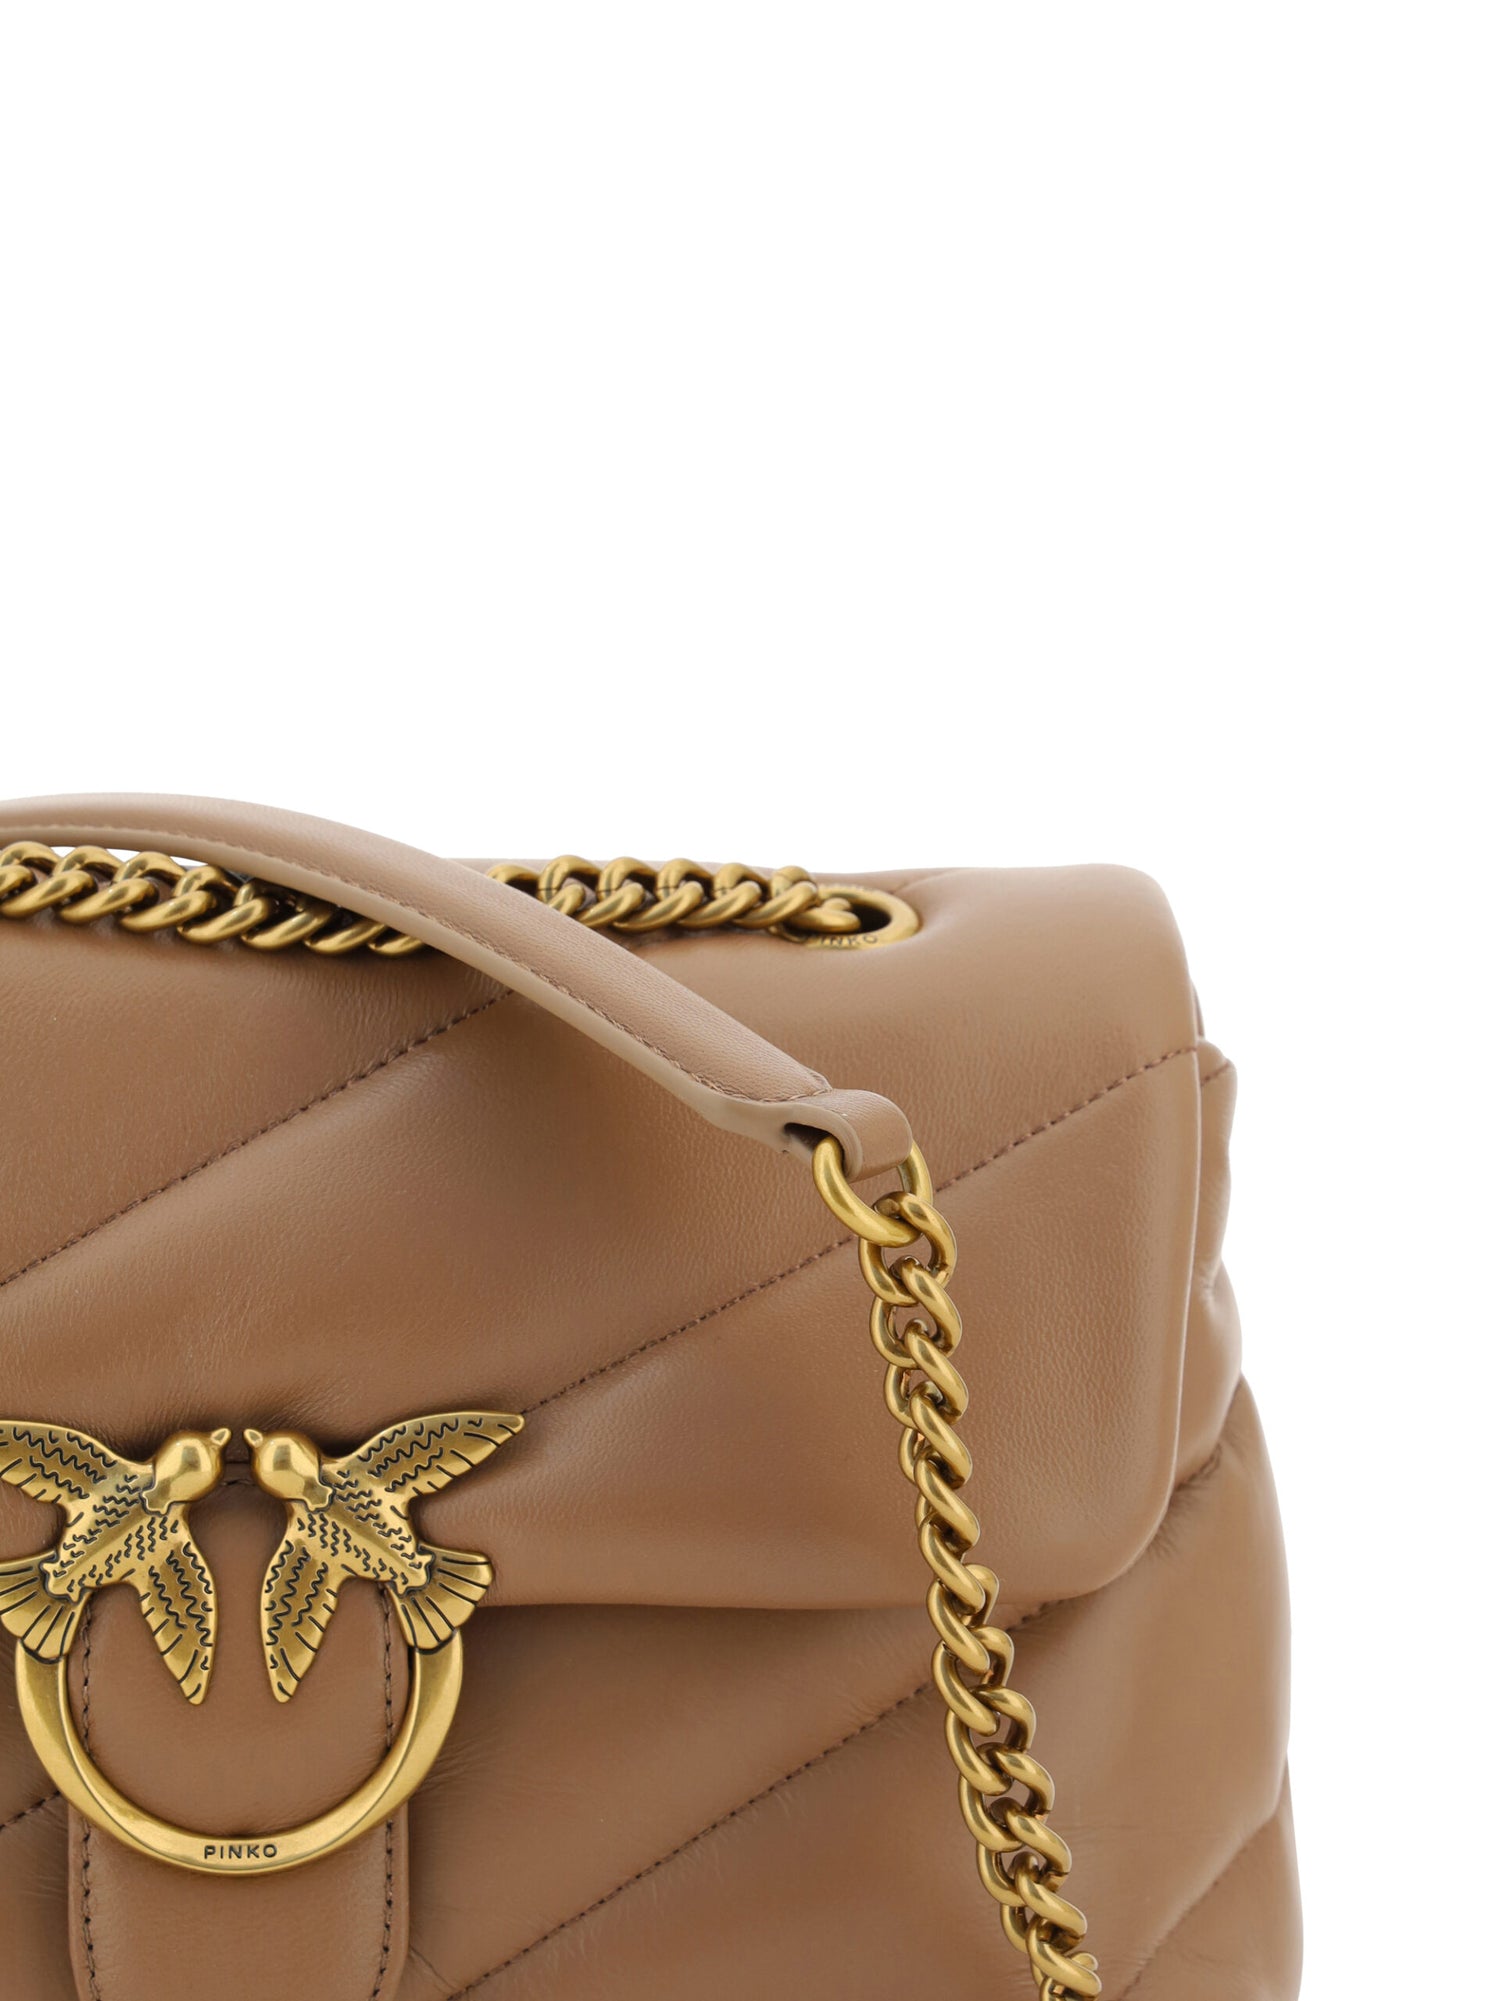 PINKO Brown Calf Leather Love Classic Shoulder Bag - DEA STILOSA MILANO